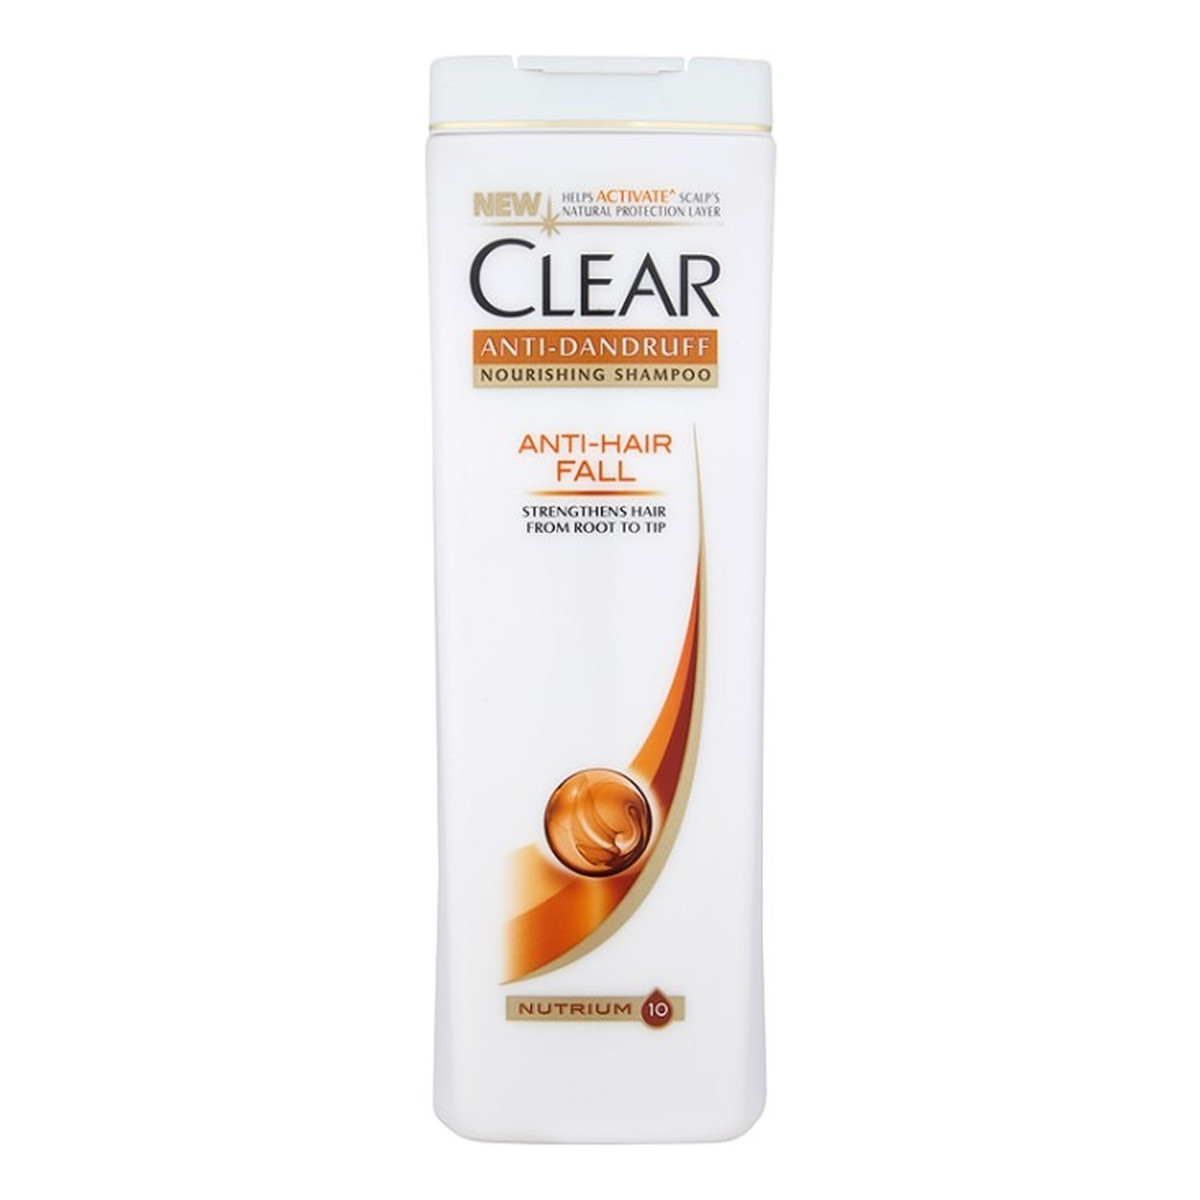 clear szampon damski wizaz